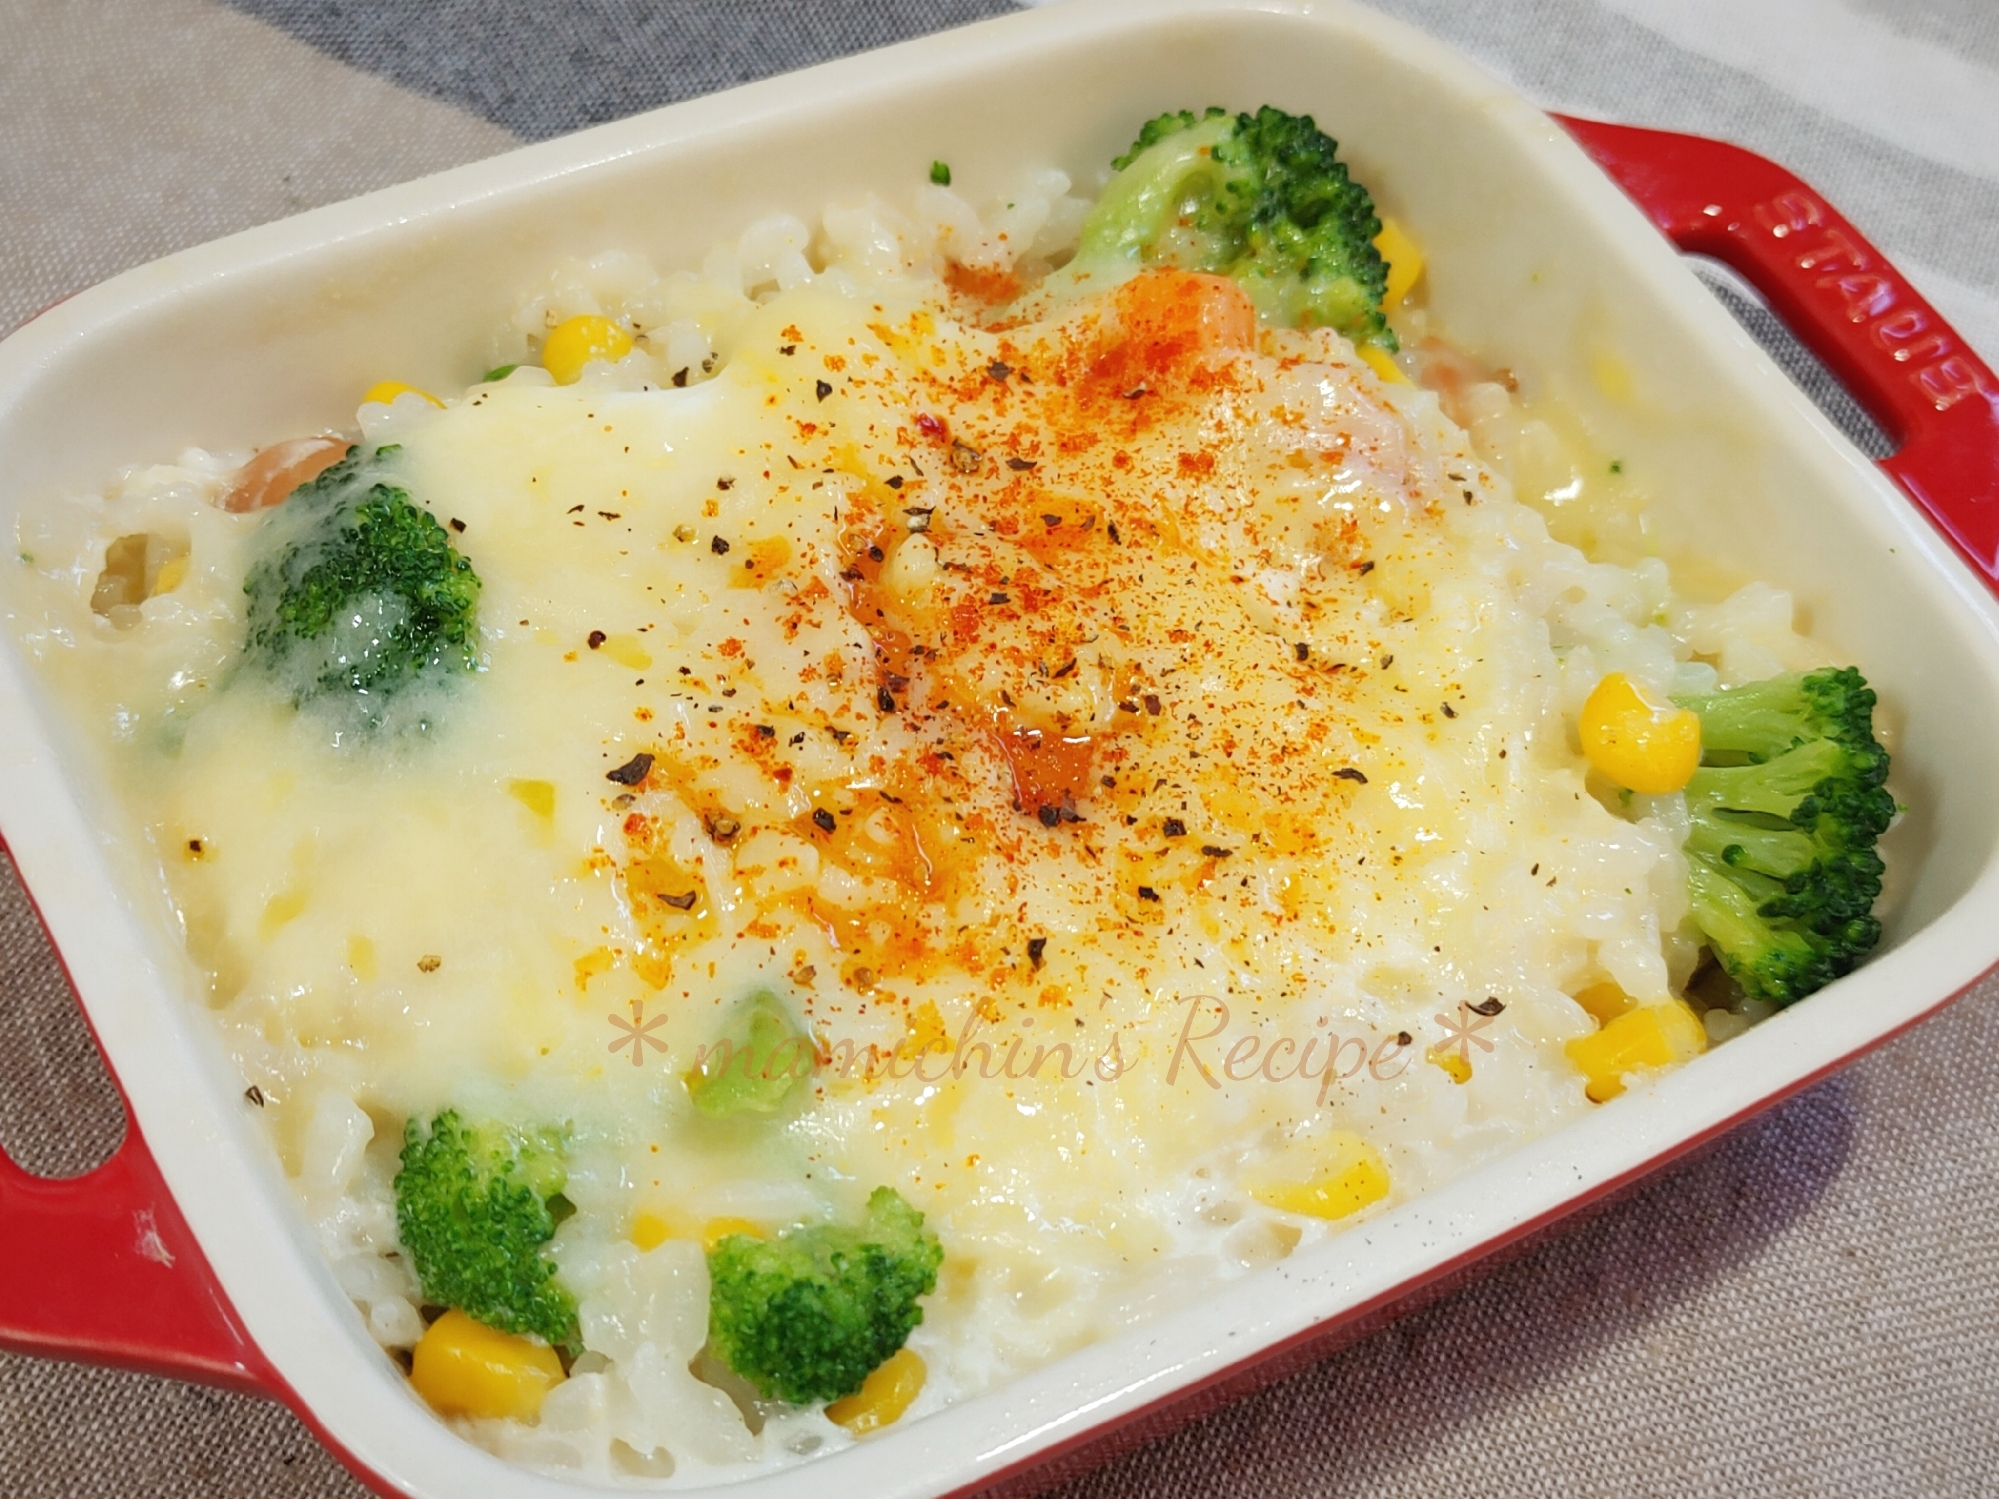 レンジUP彡残りご飯と冷凍野菜のドリア風〜